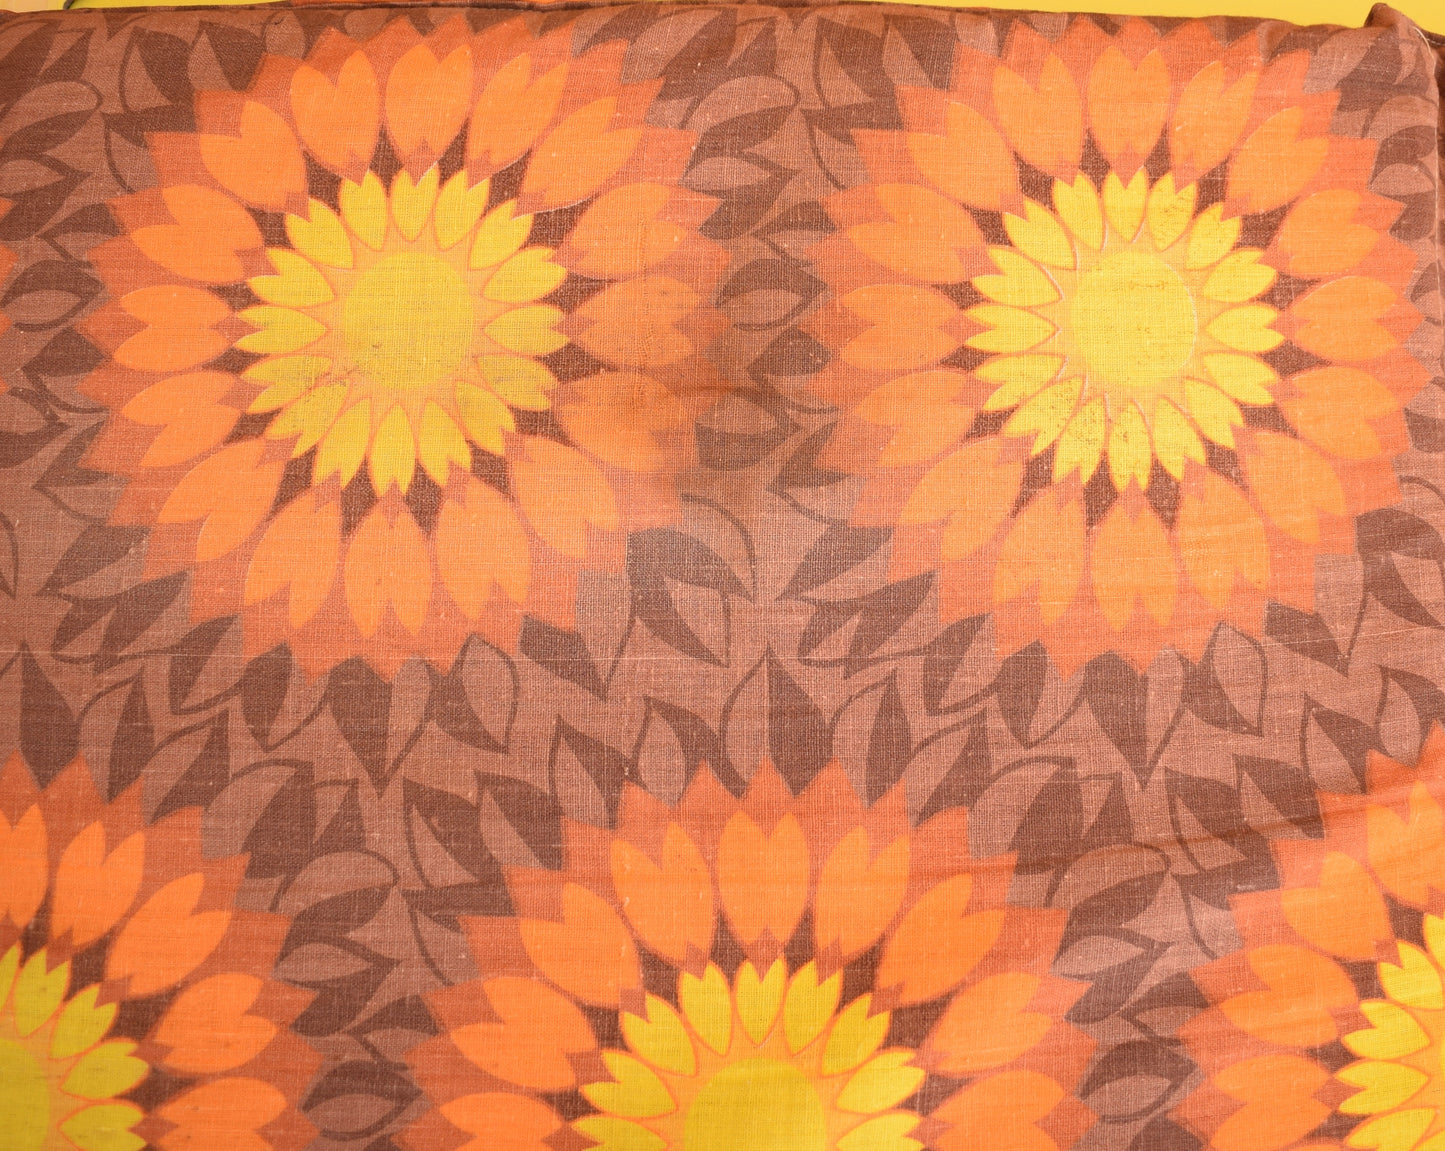 Vintage 1960s Long Folding Cushion - Orange Flower